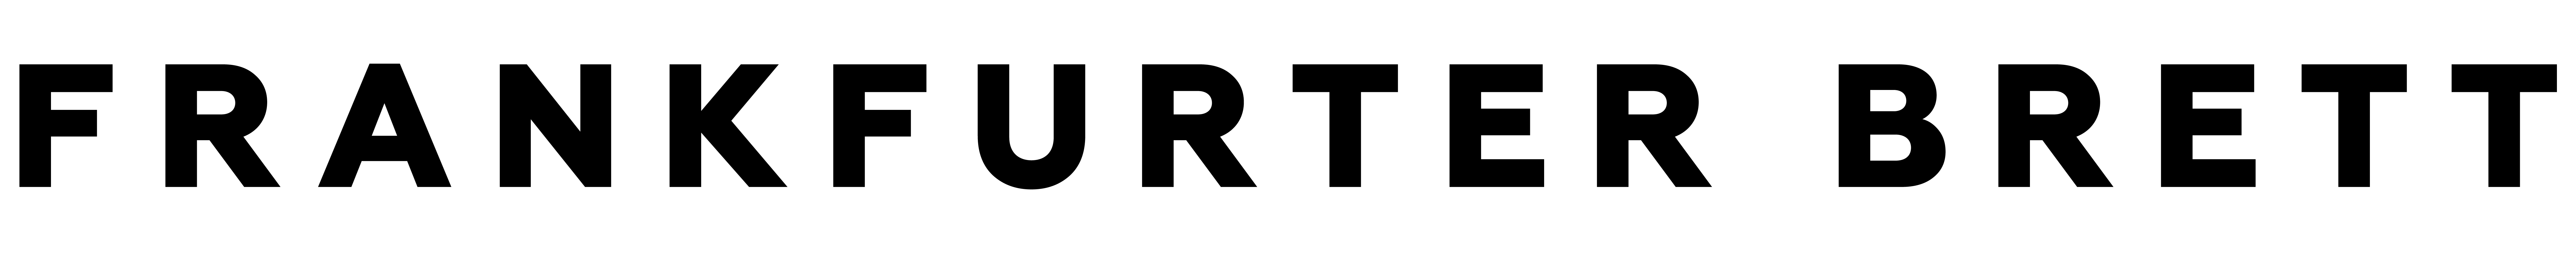 Frankfurter Brett logo